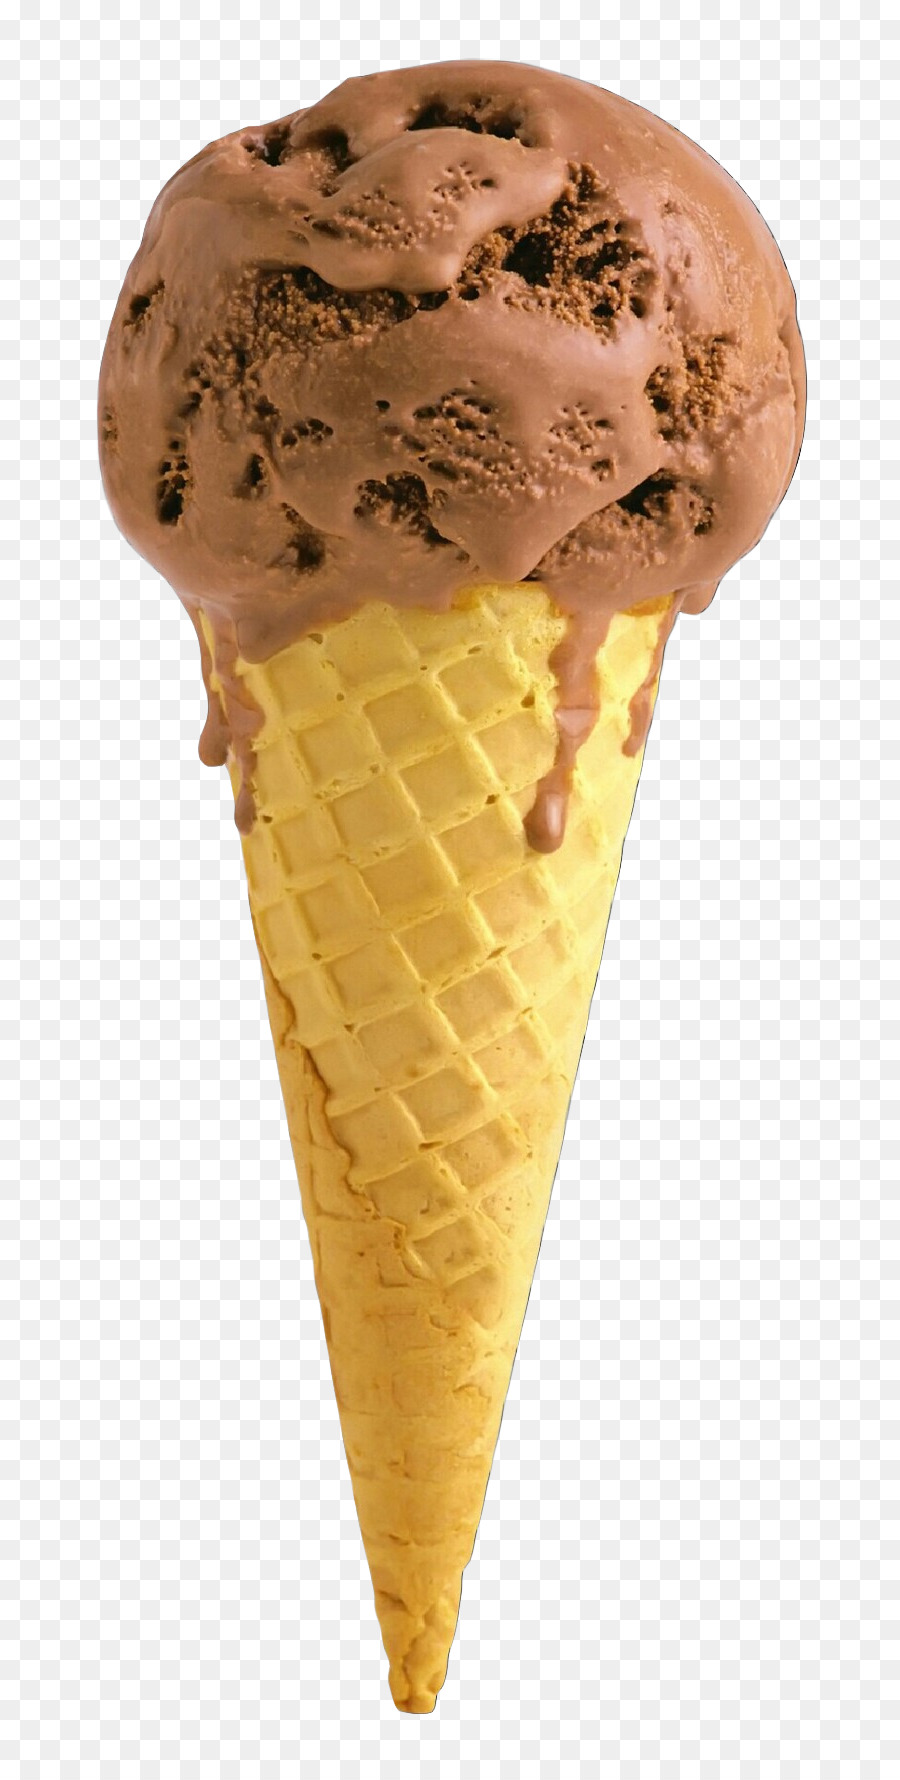 Ice Cream Cones Sundae Chocolate ice cream -  png download - 876*1777 - Free Transparent Ice Cream Cones png Download.